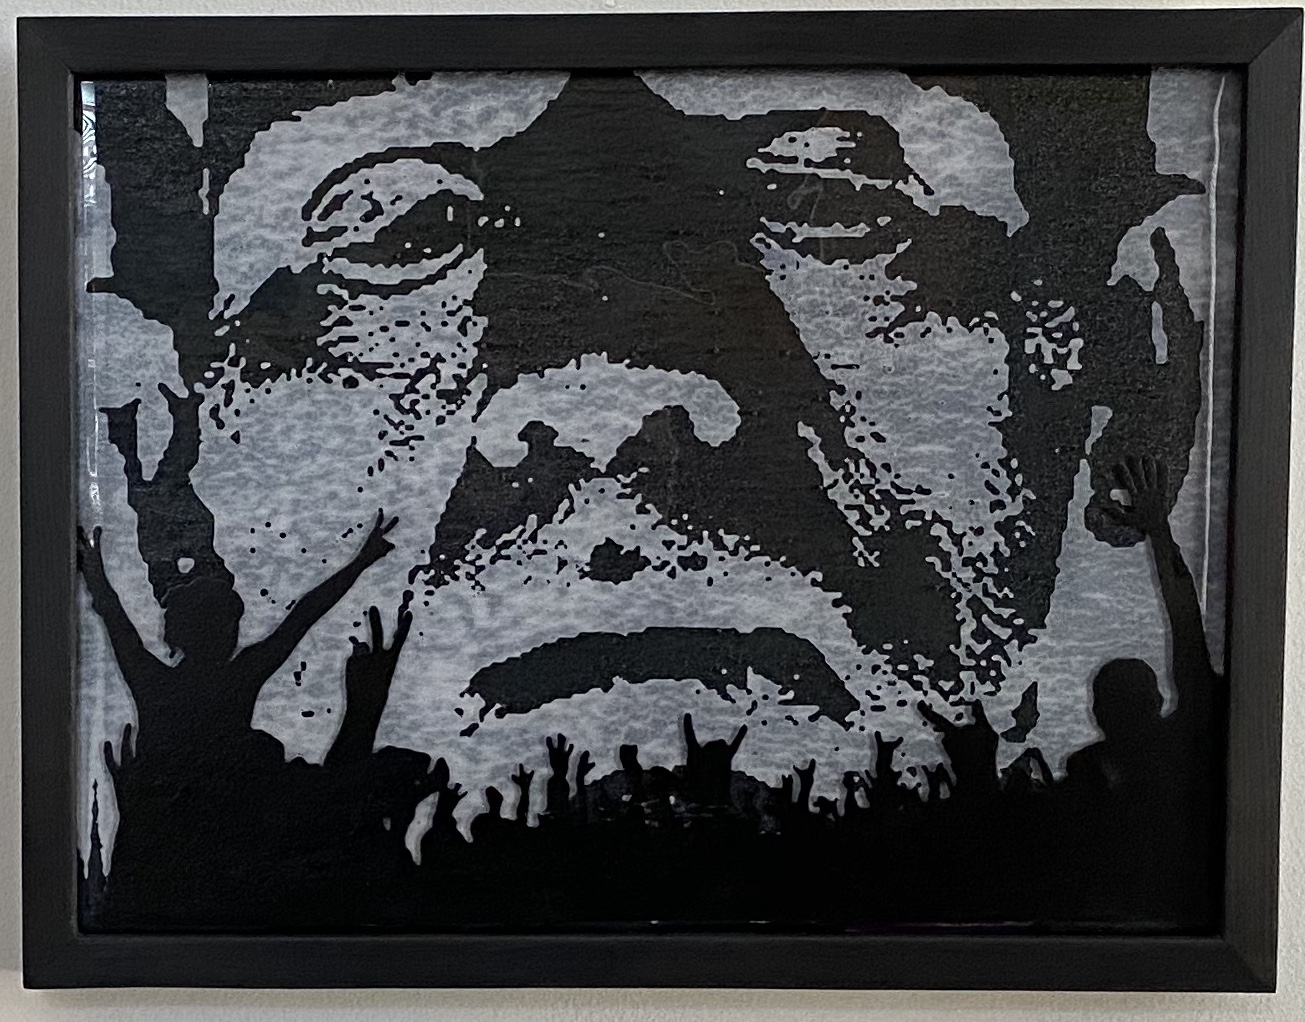 Black Plastic Frankenstein
Enamel on Fused Glass
17.25" X 1.25
$250.